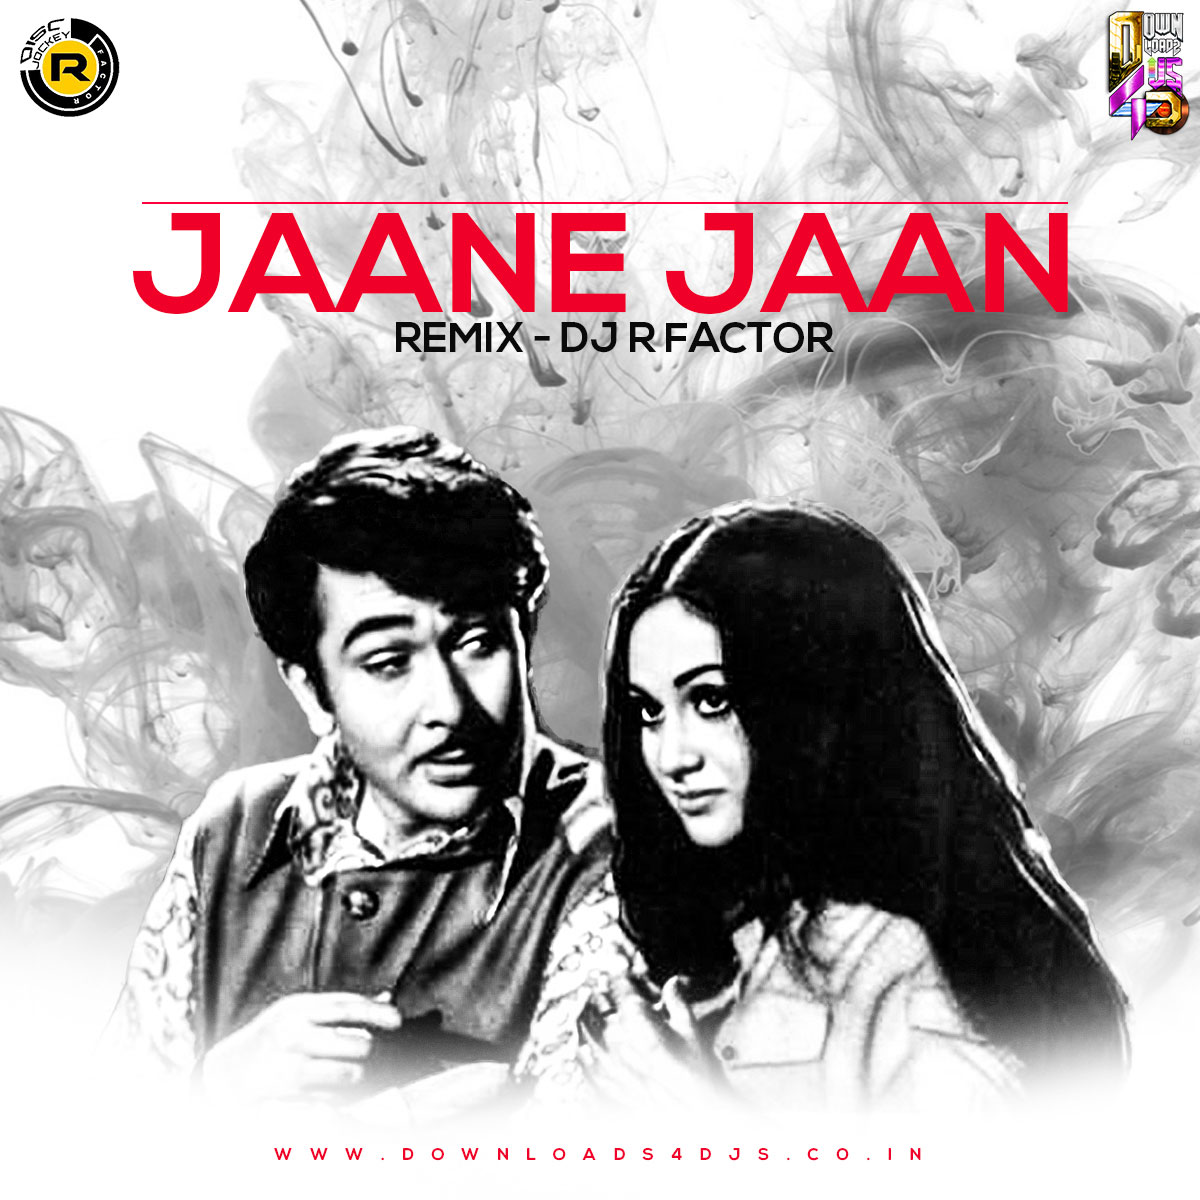 Jaane-Jaan | Downloads4Djs